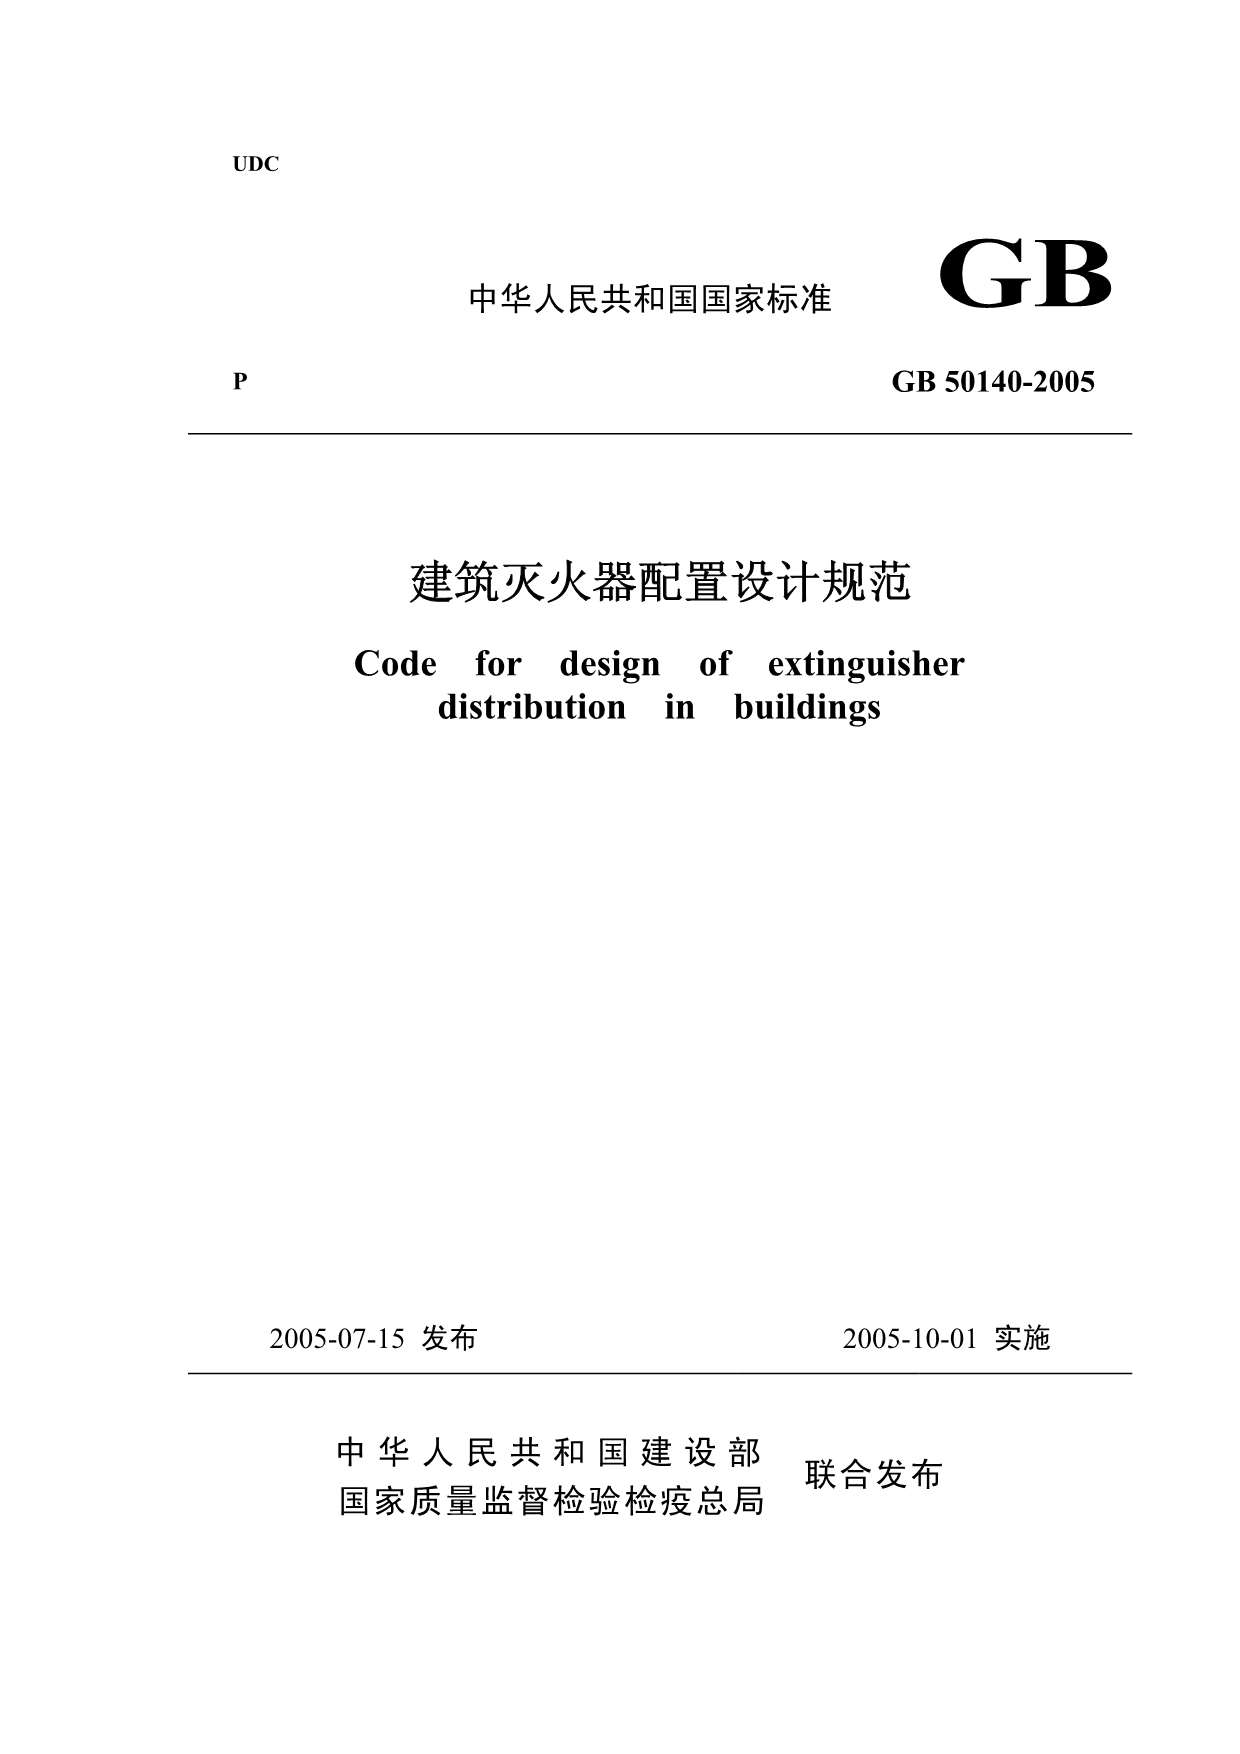 GB50140-2005建筑灭火器配置设计规范及条文说明